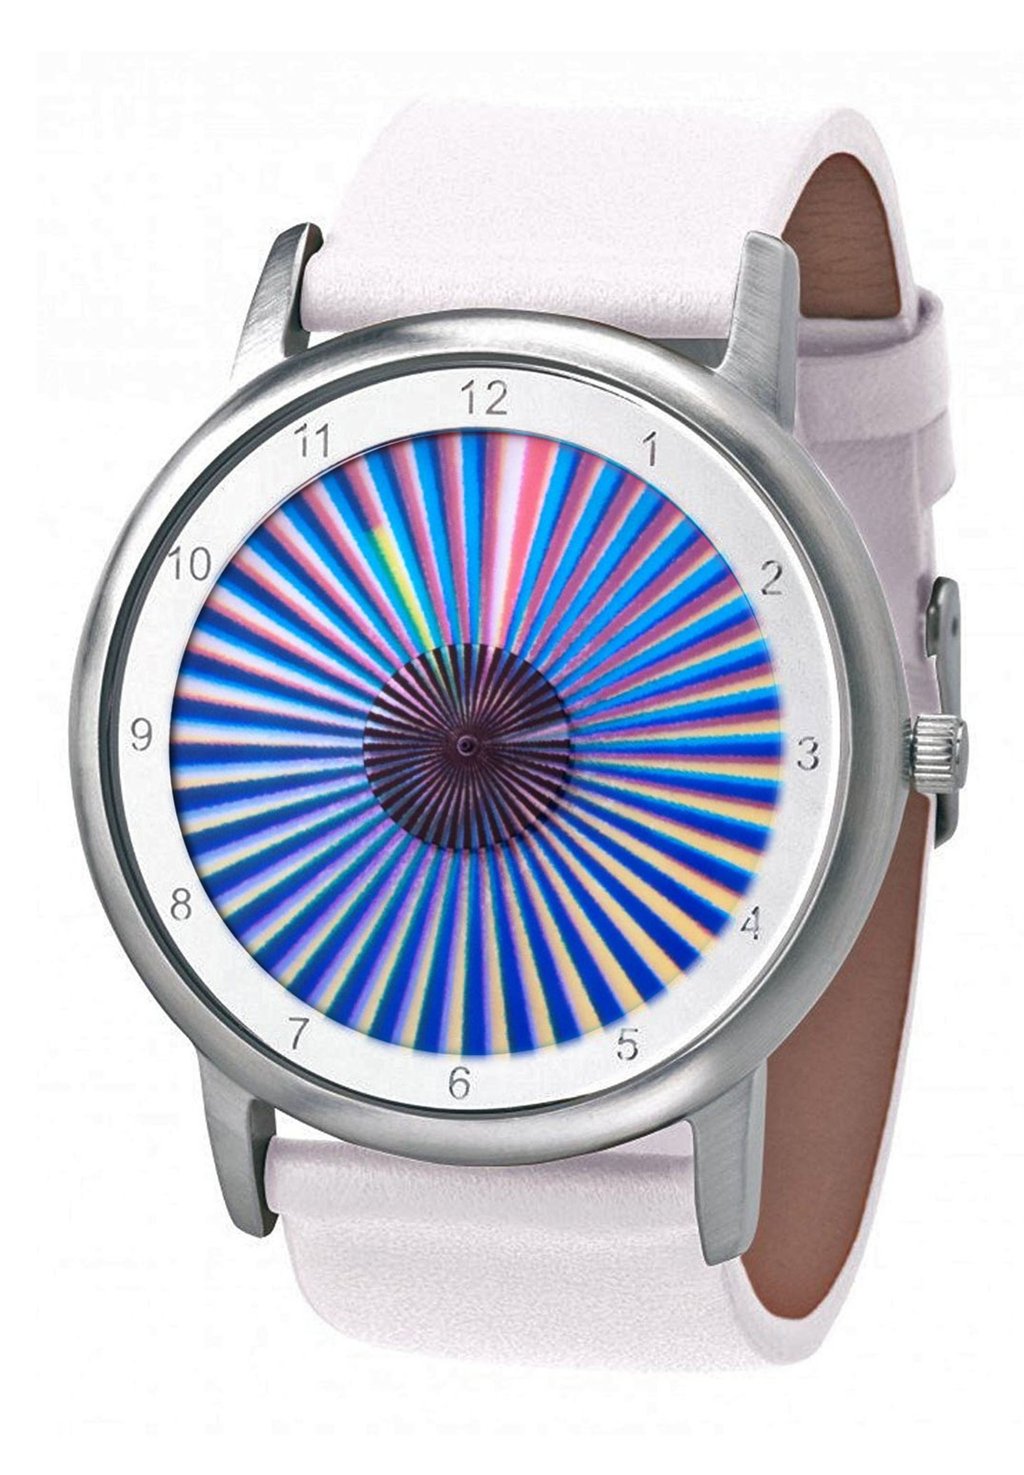 Умные часы AVANTGARDIA SHEER (NEUES DESIGN) Rainbow Watch, цвет weißes echtleder armband